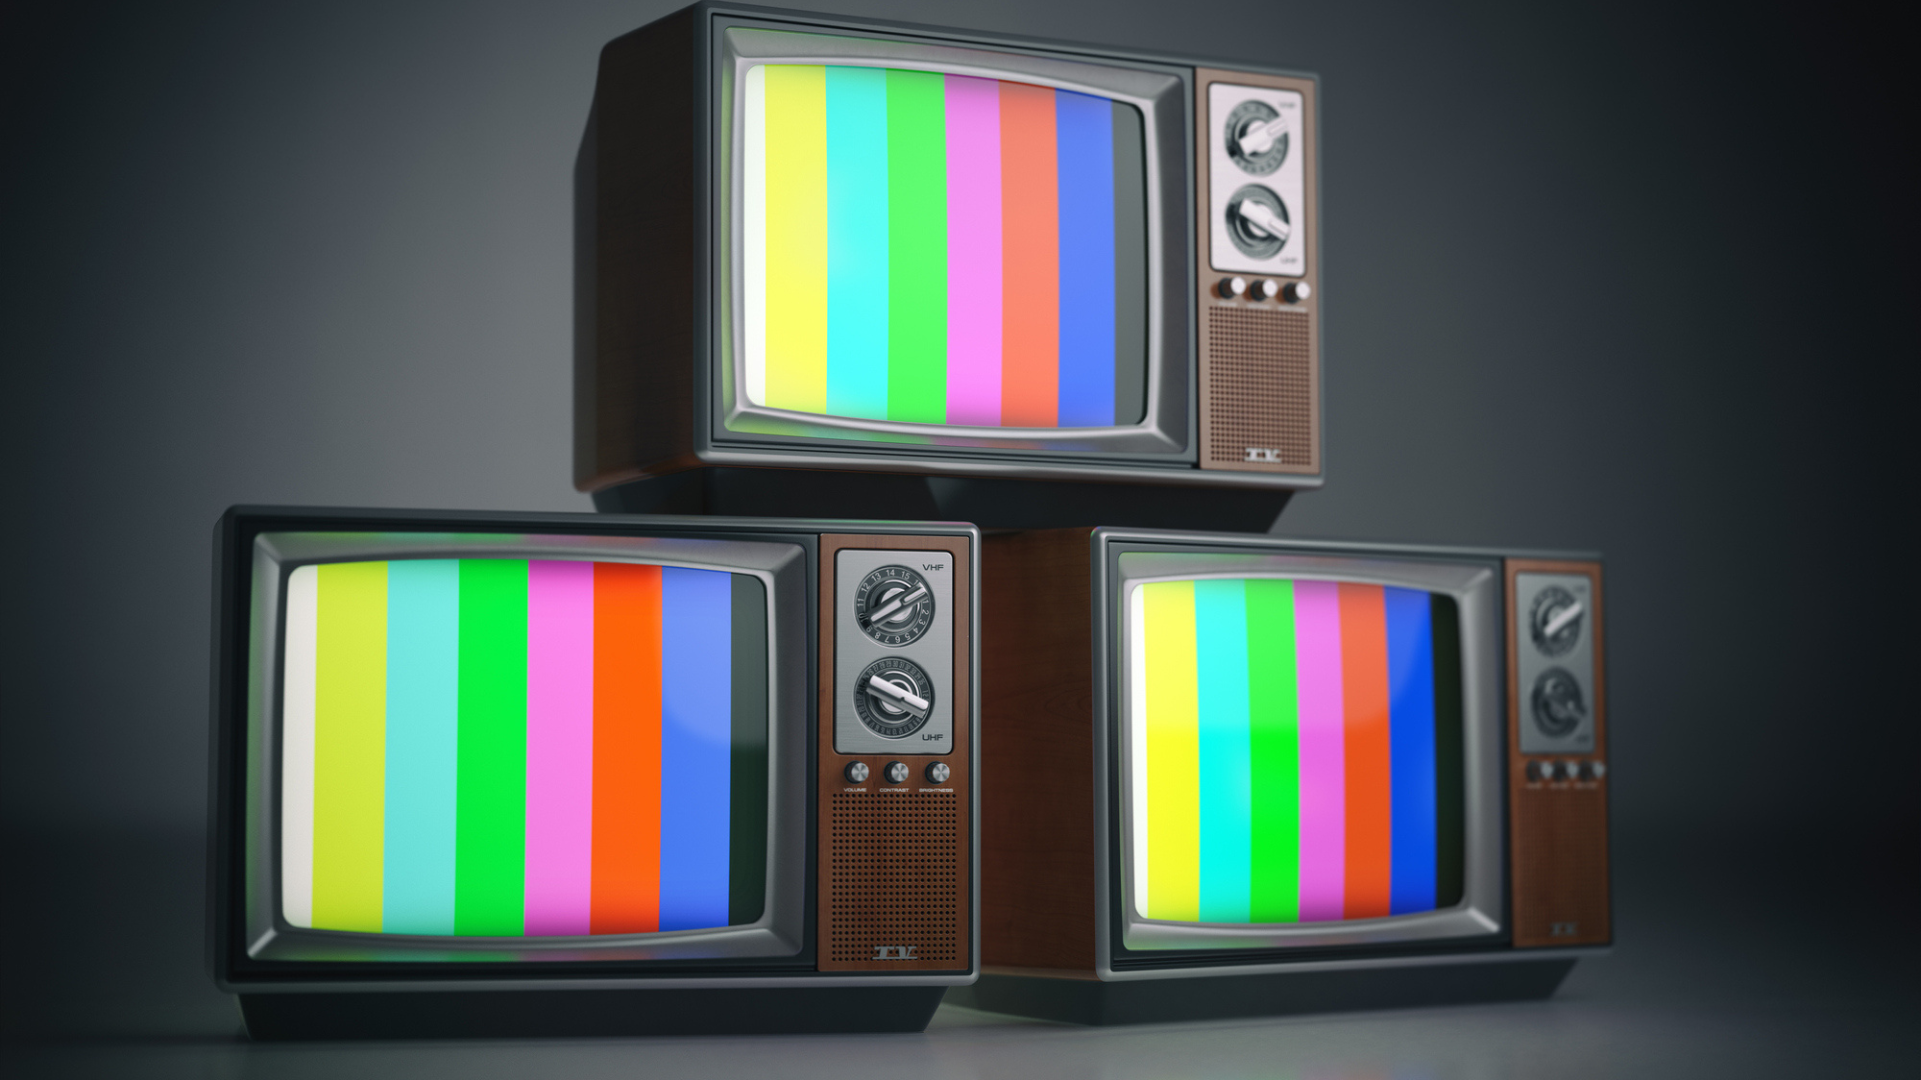 Nesta imagem podemos ver três TVs, representando a publicidade na TV aberta.